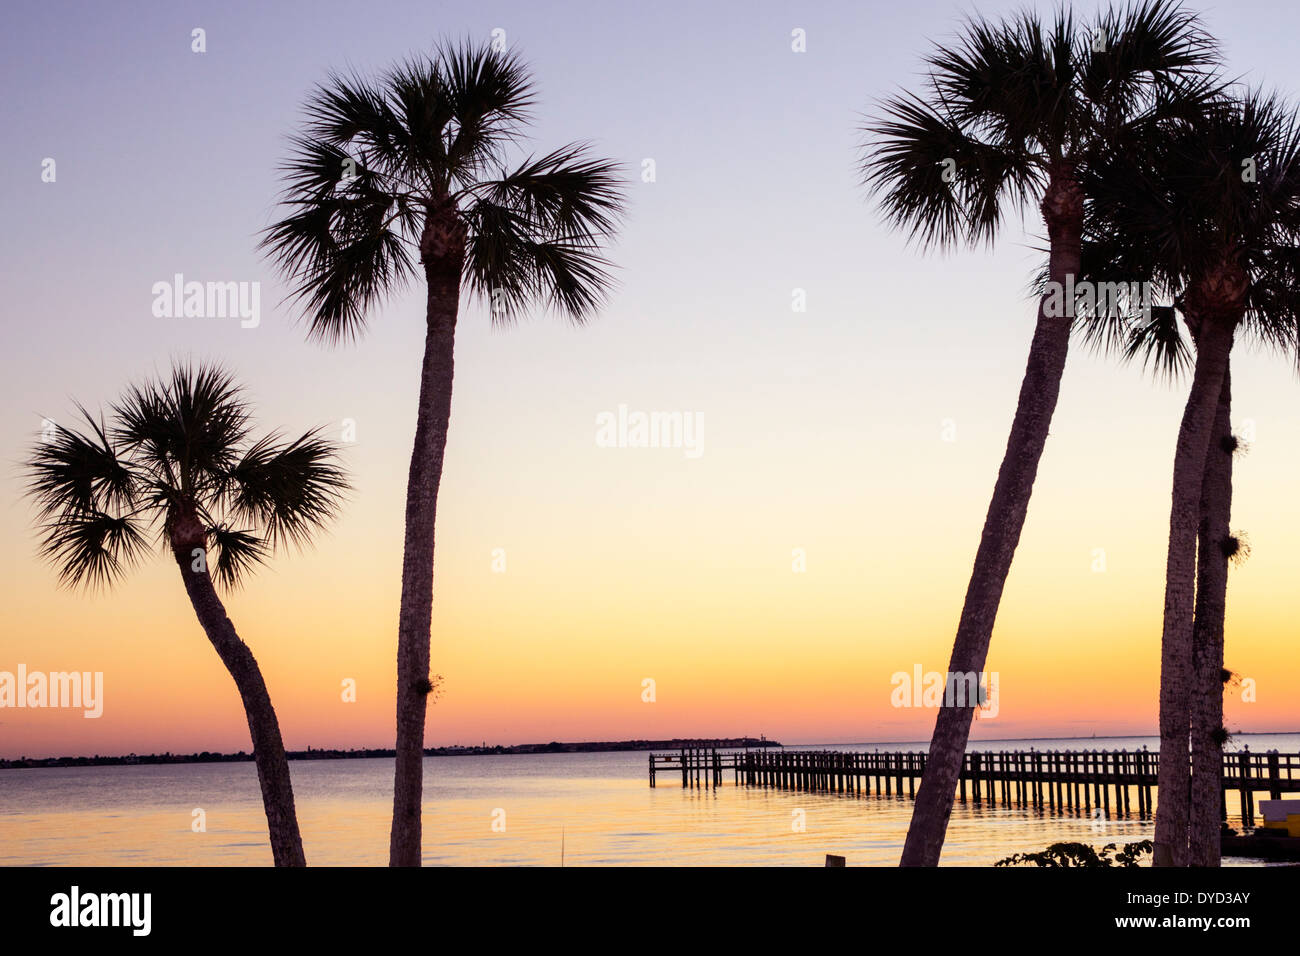 Florida Charlotte Harbour, Port Charlotte, eau de la rivière de la paix, coucher de soleil, crépuscule, eau, jetée, palmiers arbres, les visiteurs Voyage tourisme touristique Landma Banque D'Images